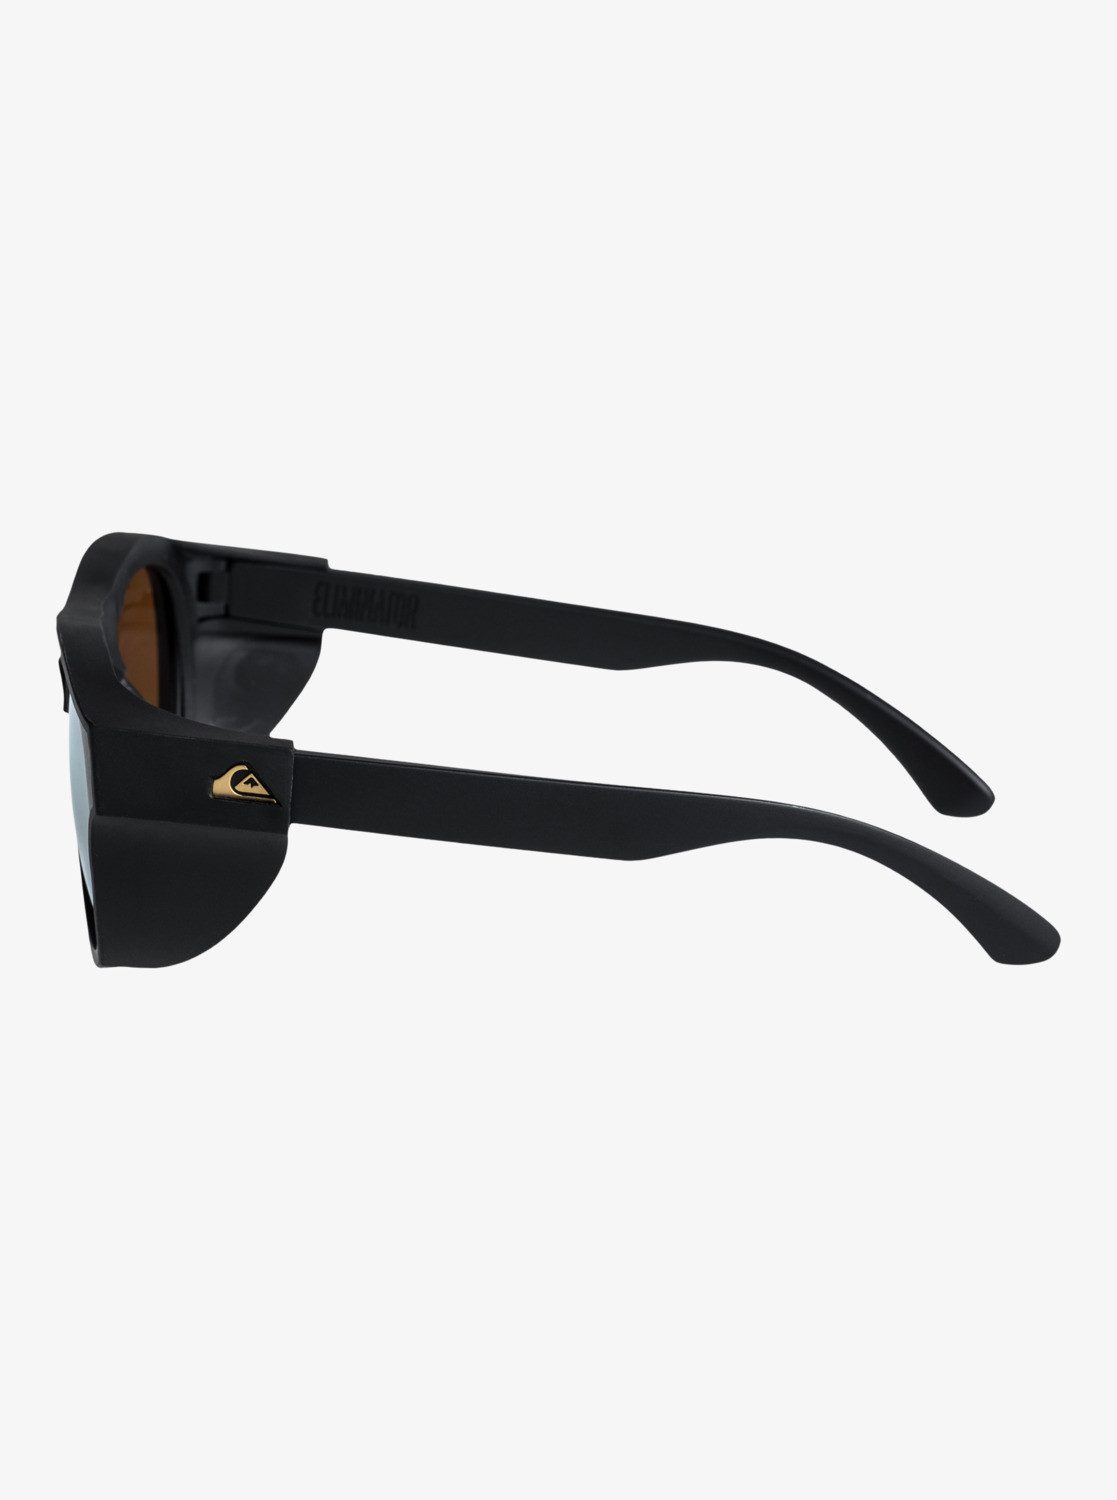 Quiksilver Sonnenbrille Eliminator+ Black/Flash Gold